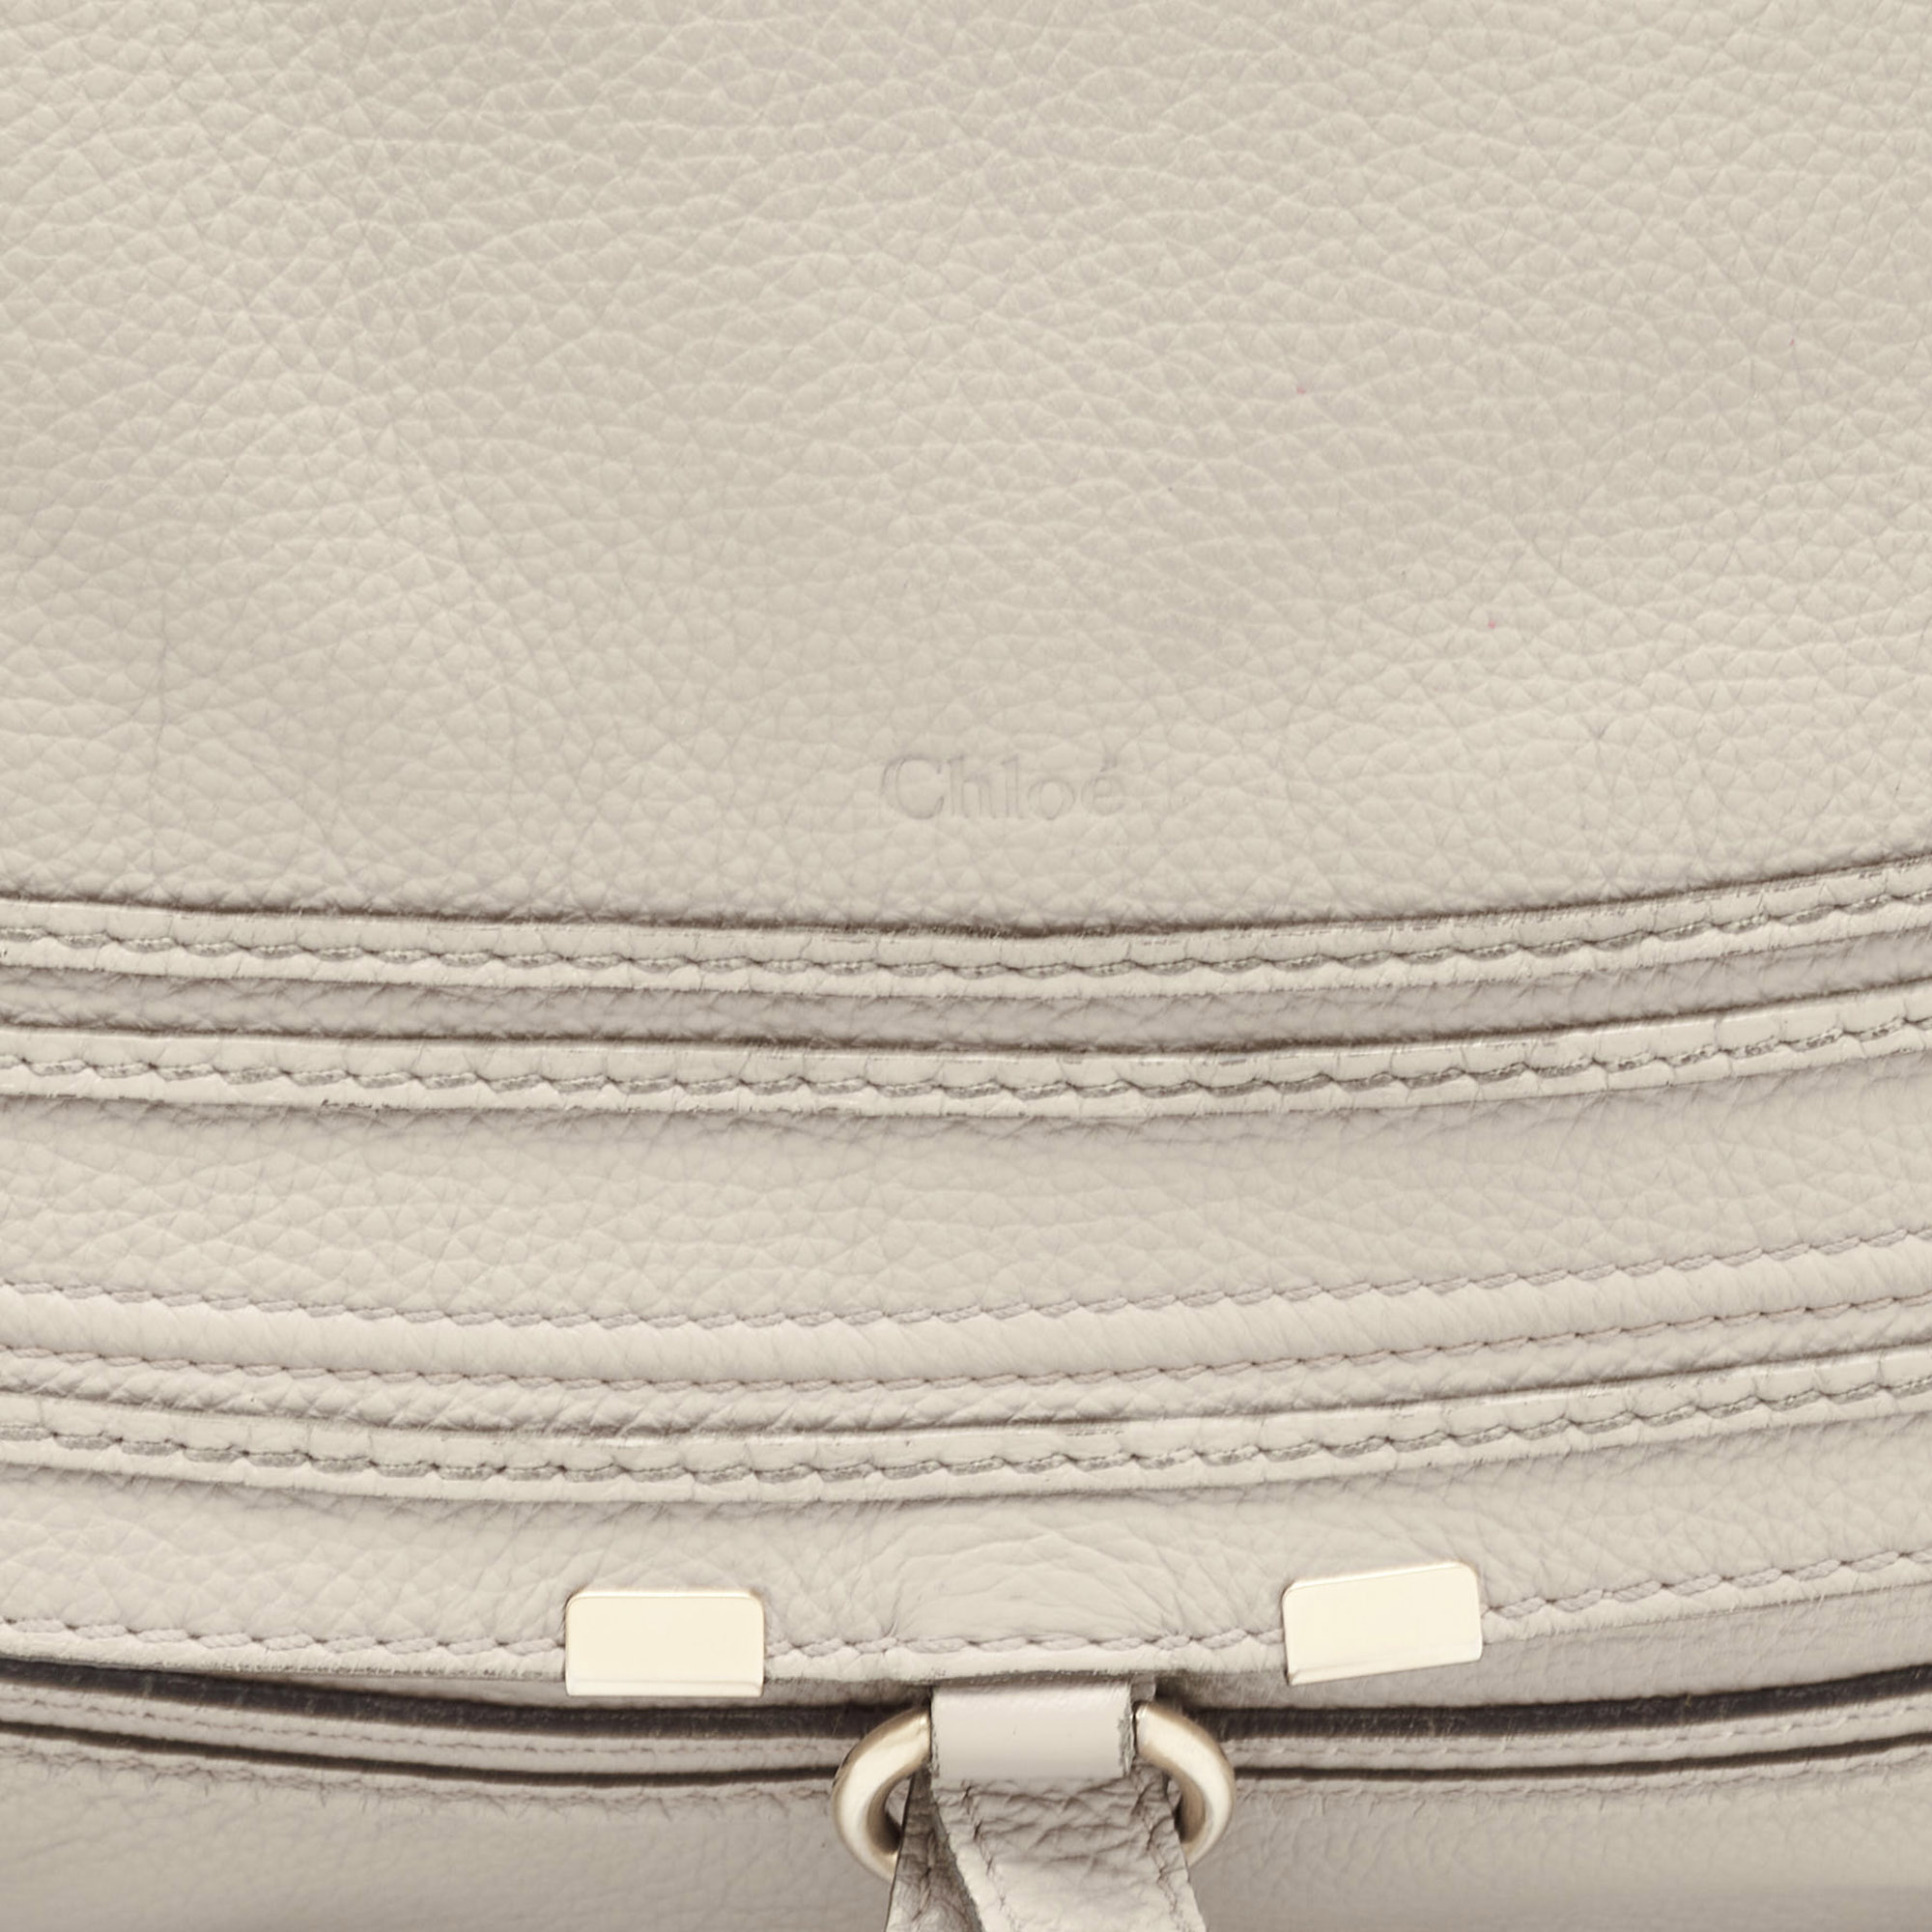 Chloe Grey Leather Large Marcie Shoulder Bag